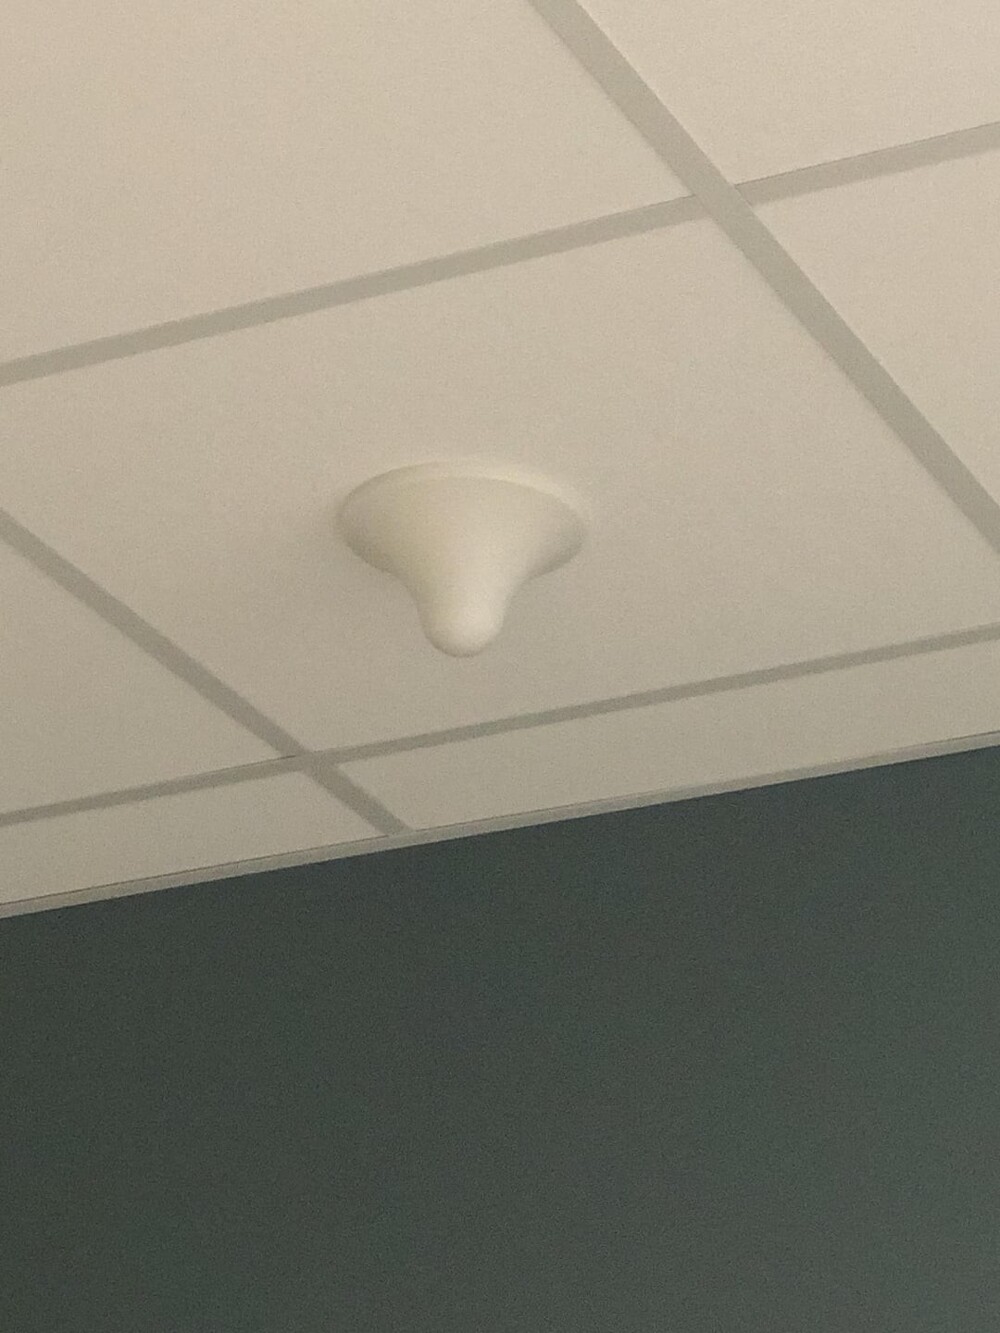 3. Что за объект свисает с потолка в больнице. Кто-нибудь знает, для чего это?